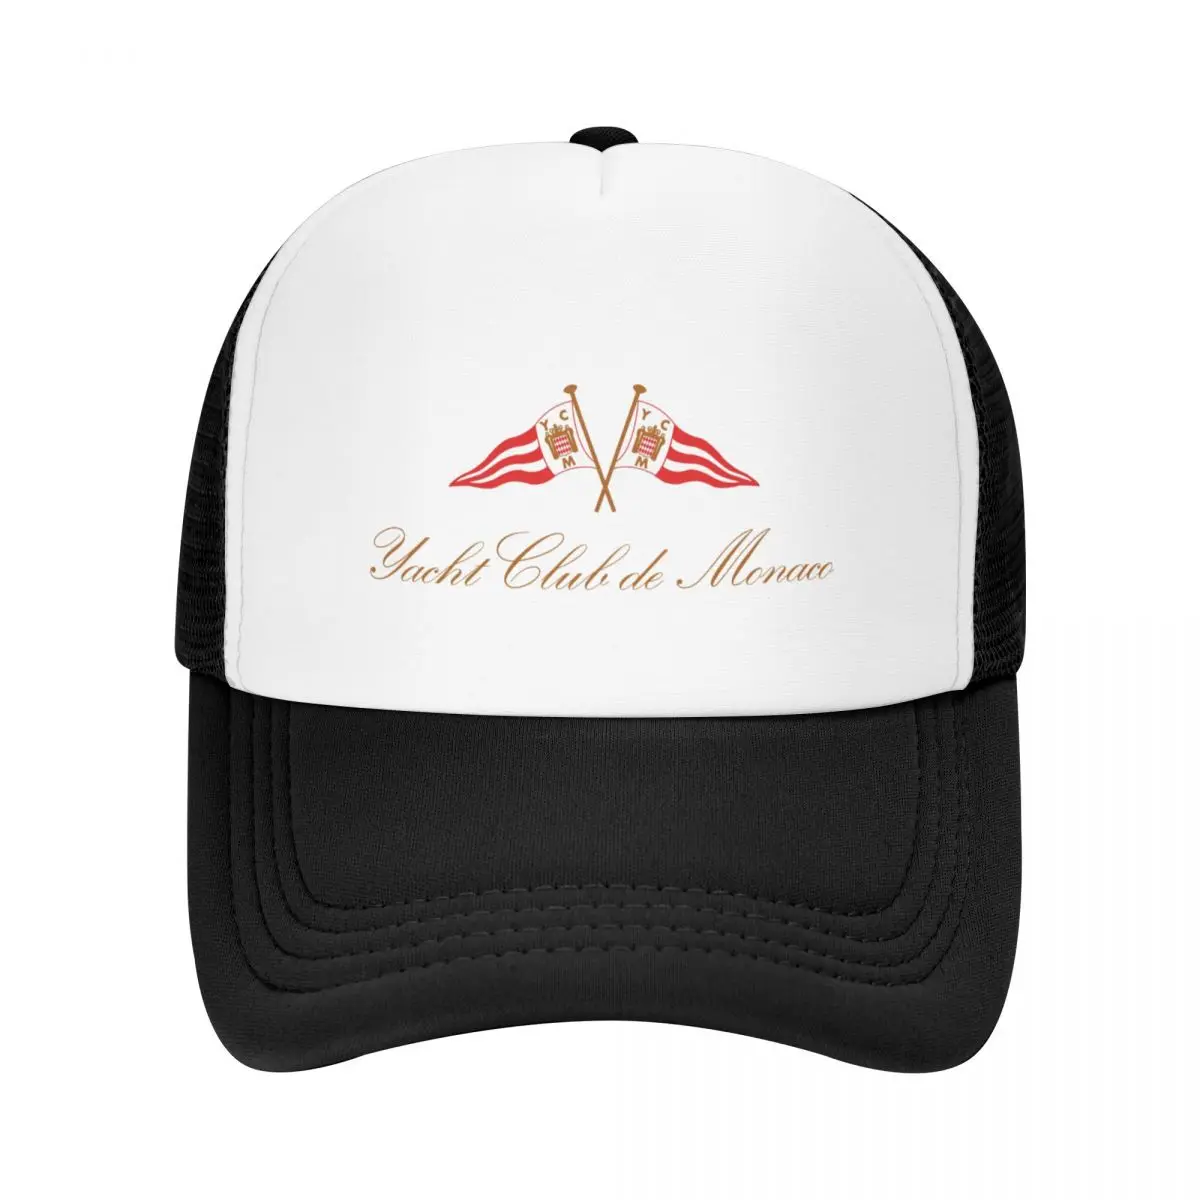 Бейзболна шапка Yacht Club de Monaco, вечерни шапки, бейзболна шапка възстановяване на предишното положение, туристическа шапка, шапка За Жени, Мъже